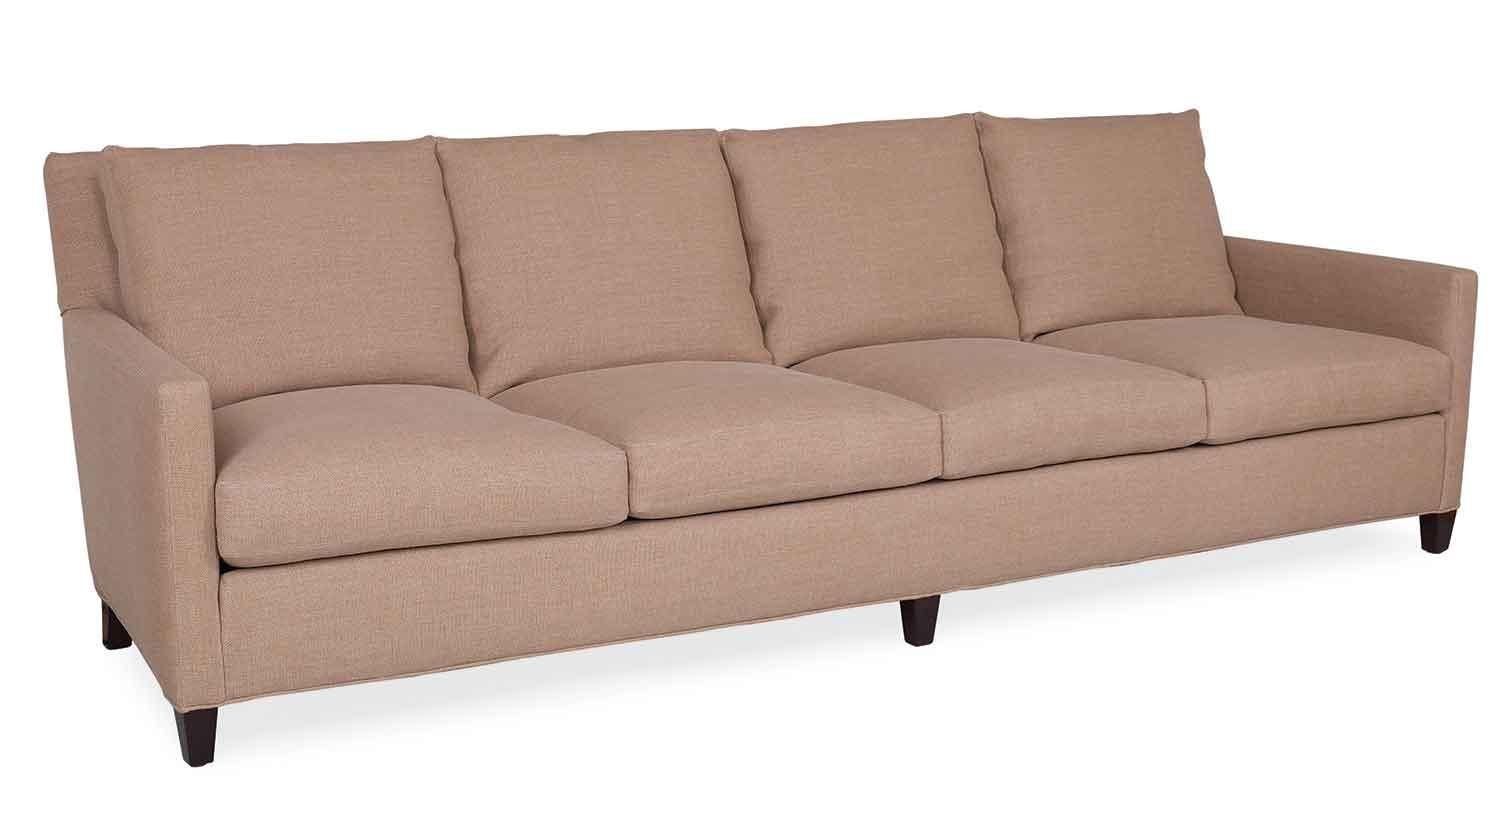 Circle Furniture – Maddie 4 Seat Sofa | Long Sofas Boston | Circle Within 4 Seat Sofas (View 20 of 20)